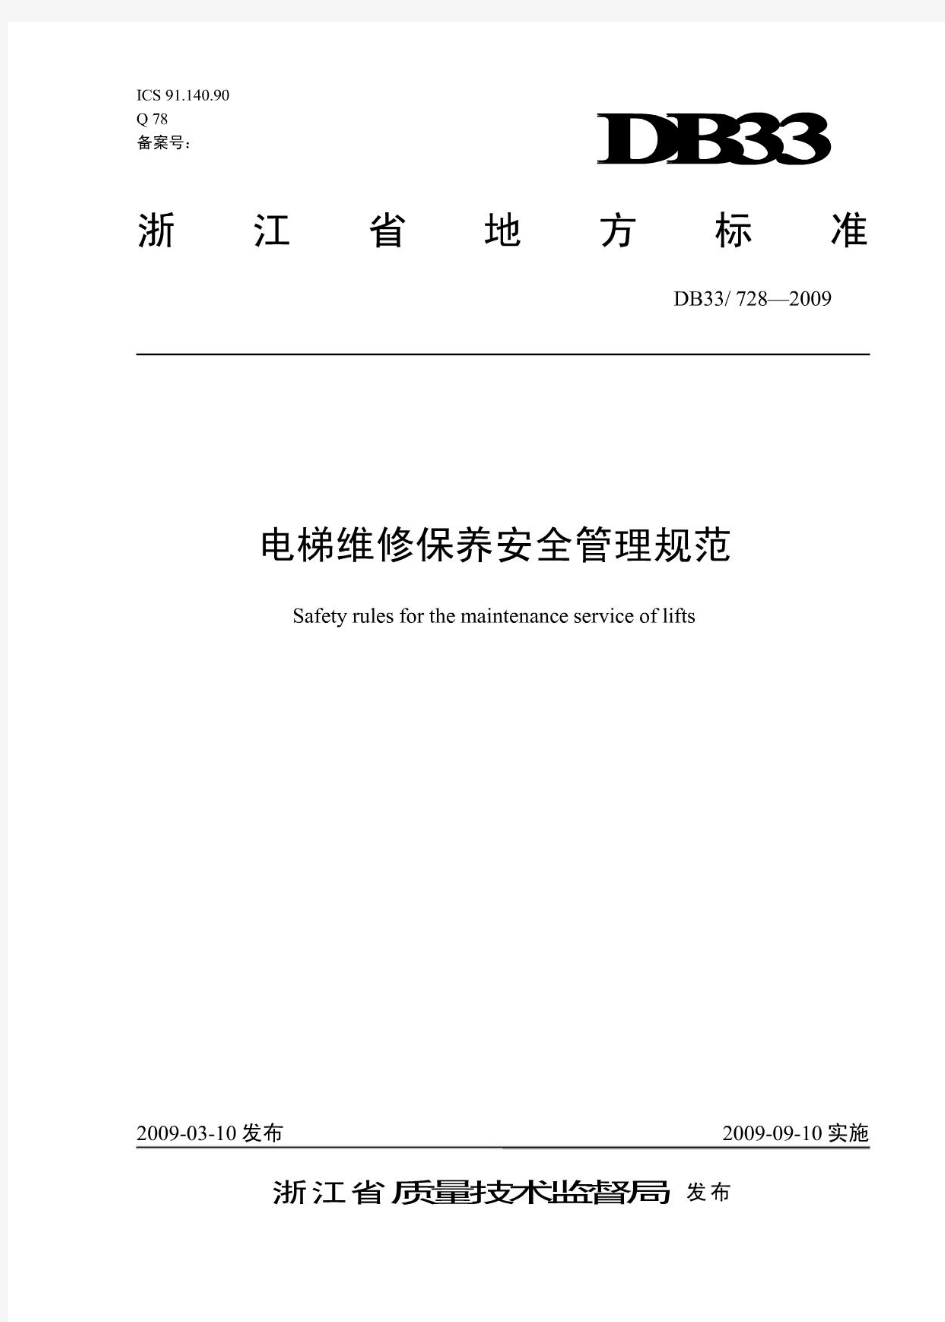 浙江省地方标准-电梯维修保养安全管理规范